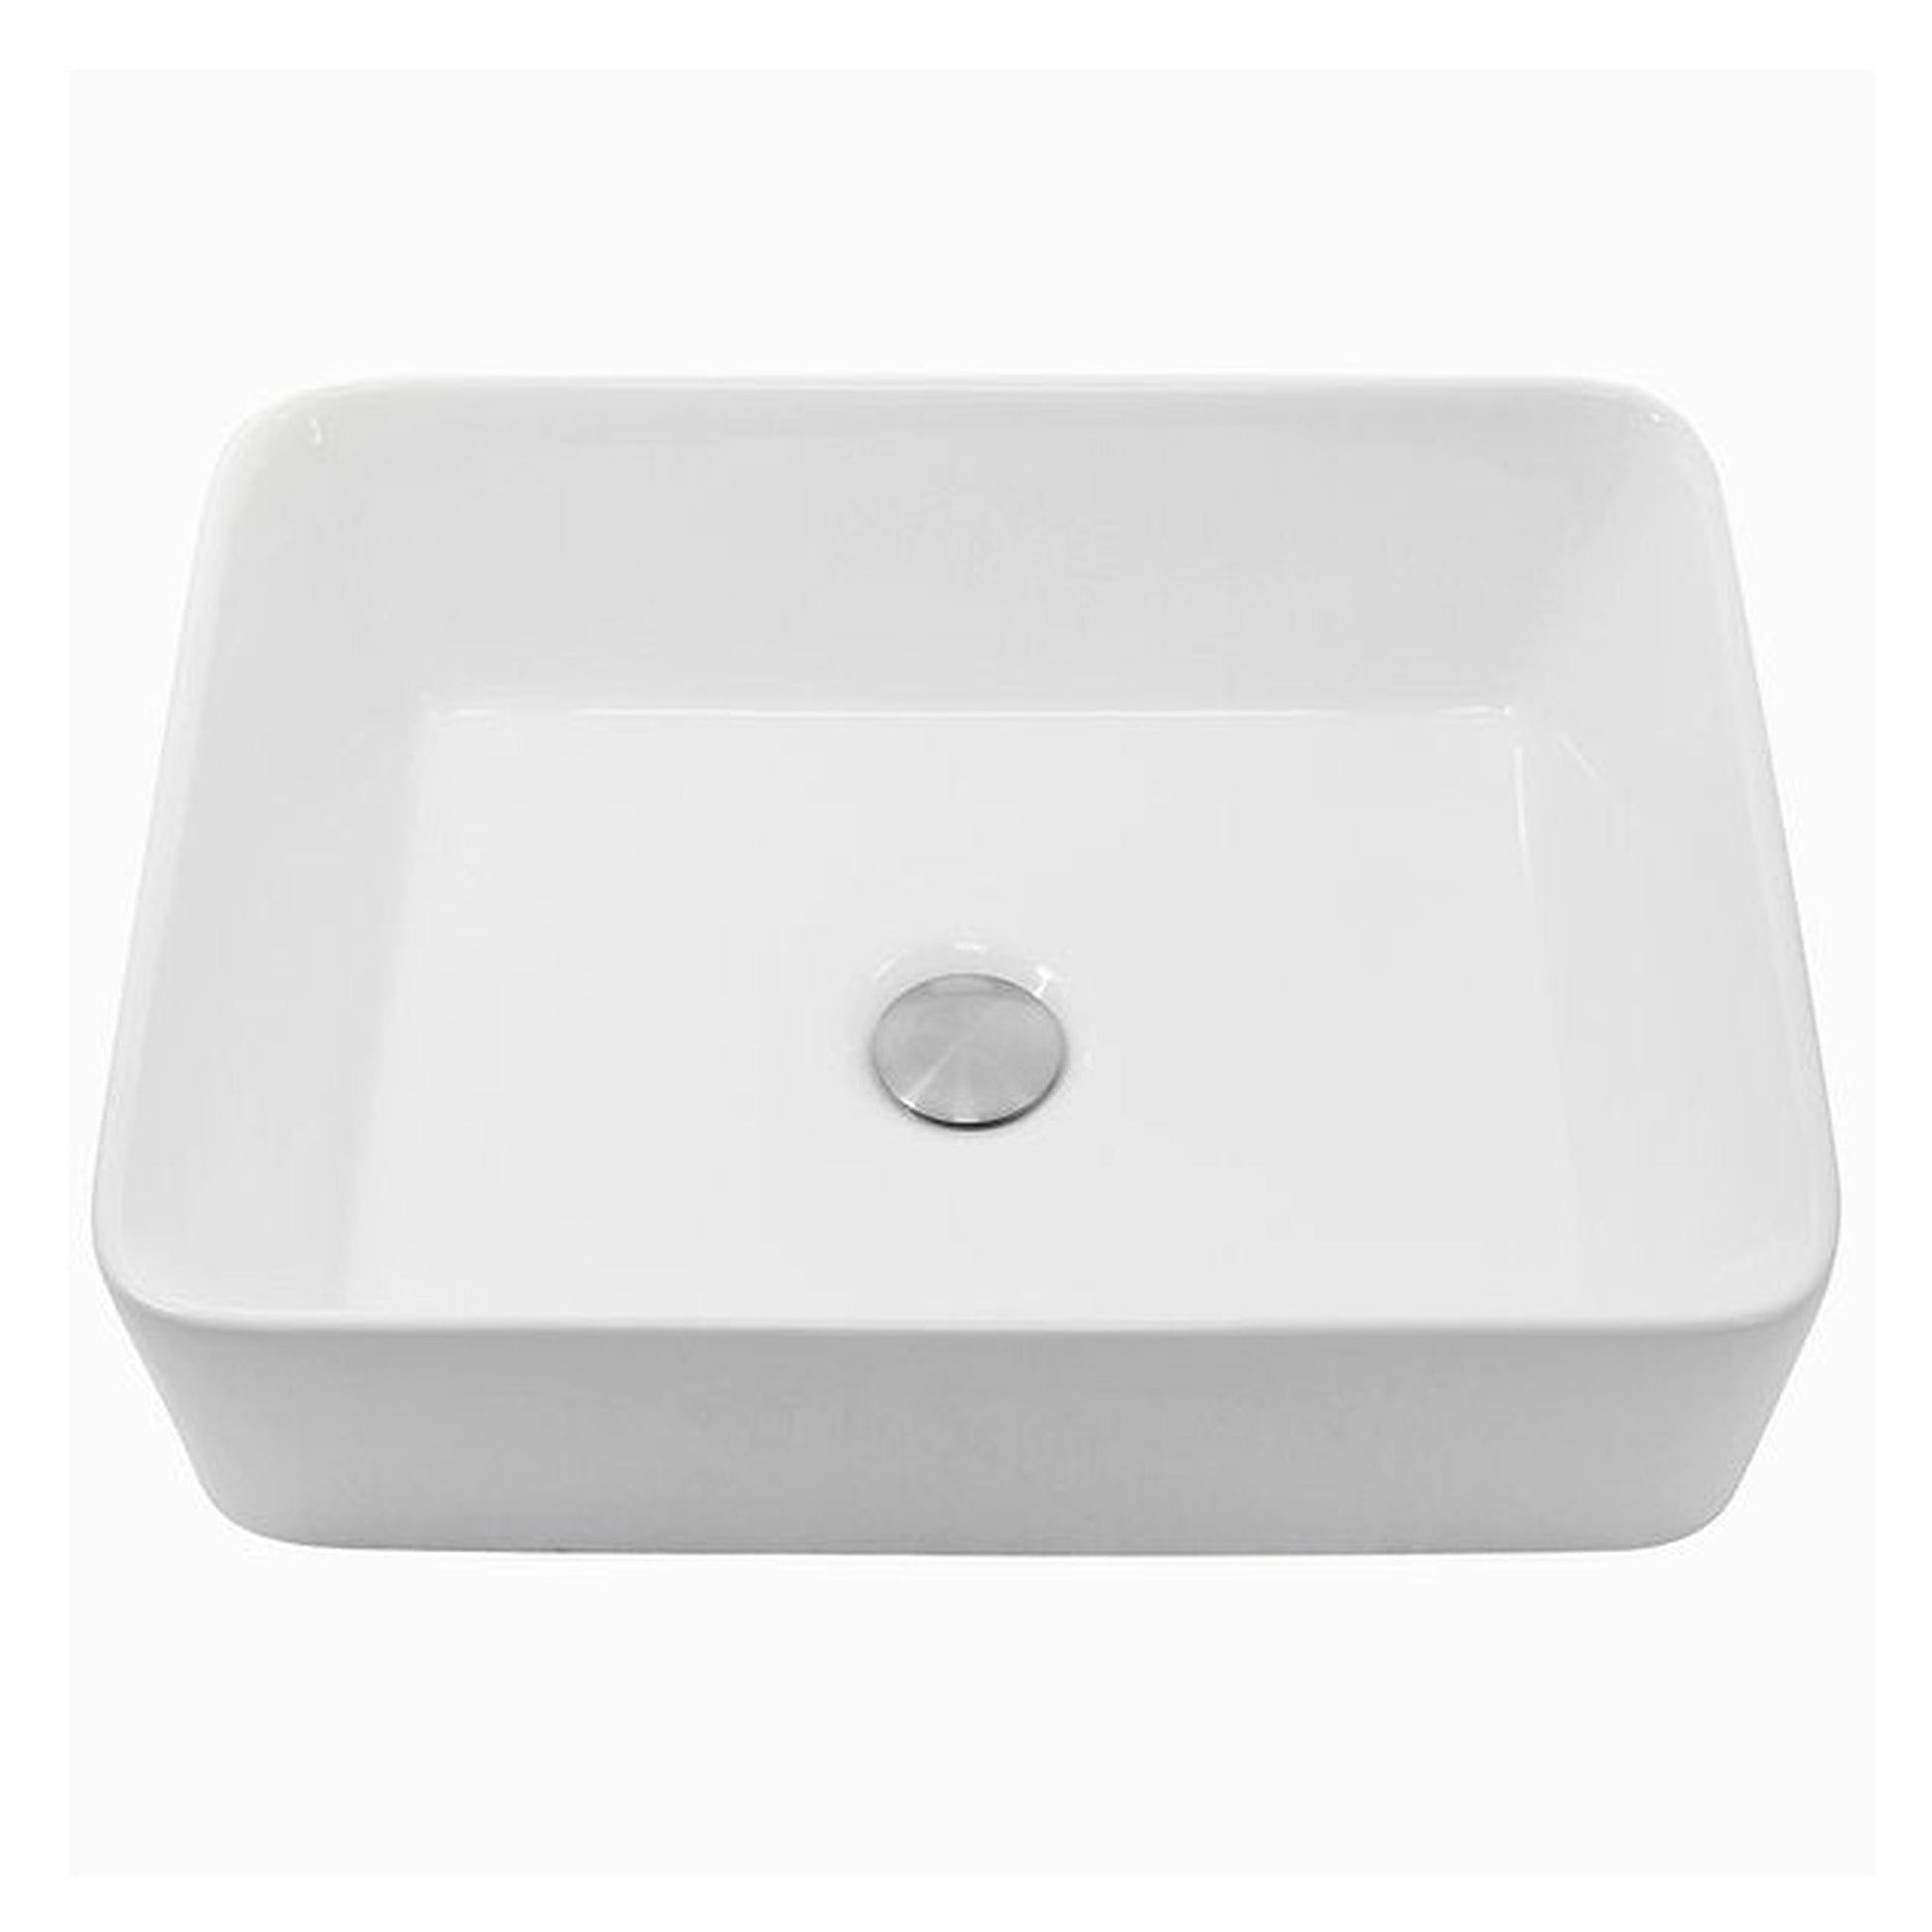 Nantucket Sinks Brant Point 19" W x 15" D Rectangular Porcelain Enamel Glazed White Ceramic Vessel Sink